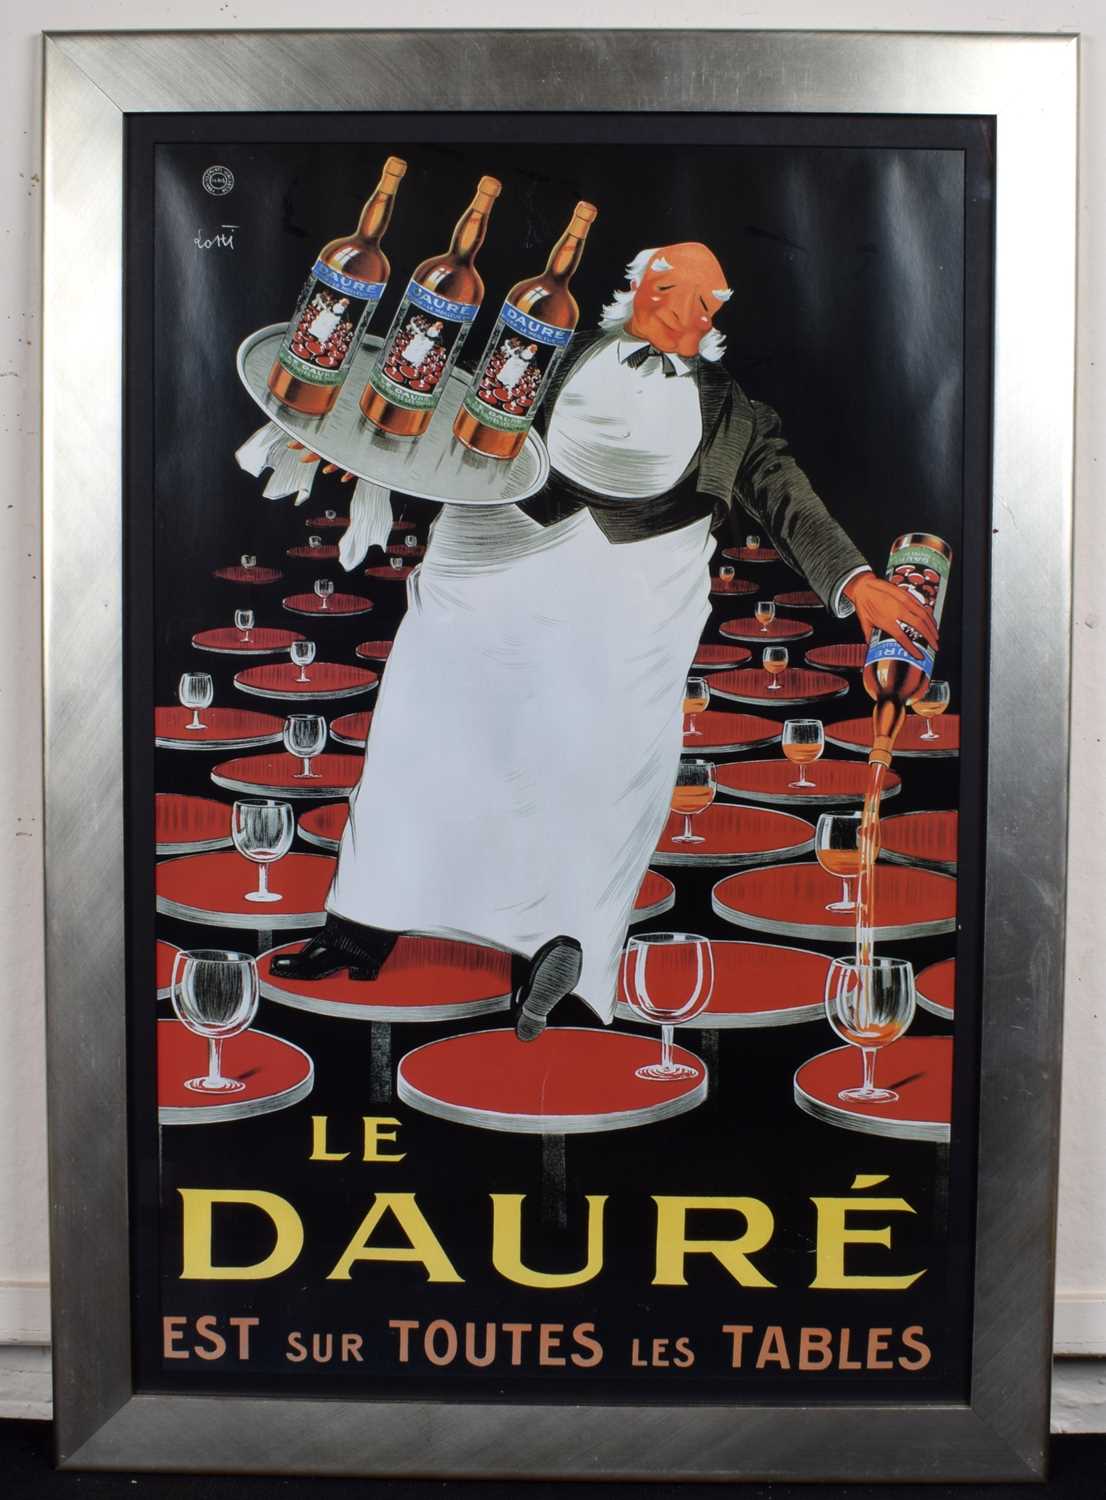 Le Dauré Poster - Image 2 of 2